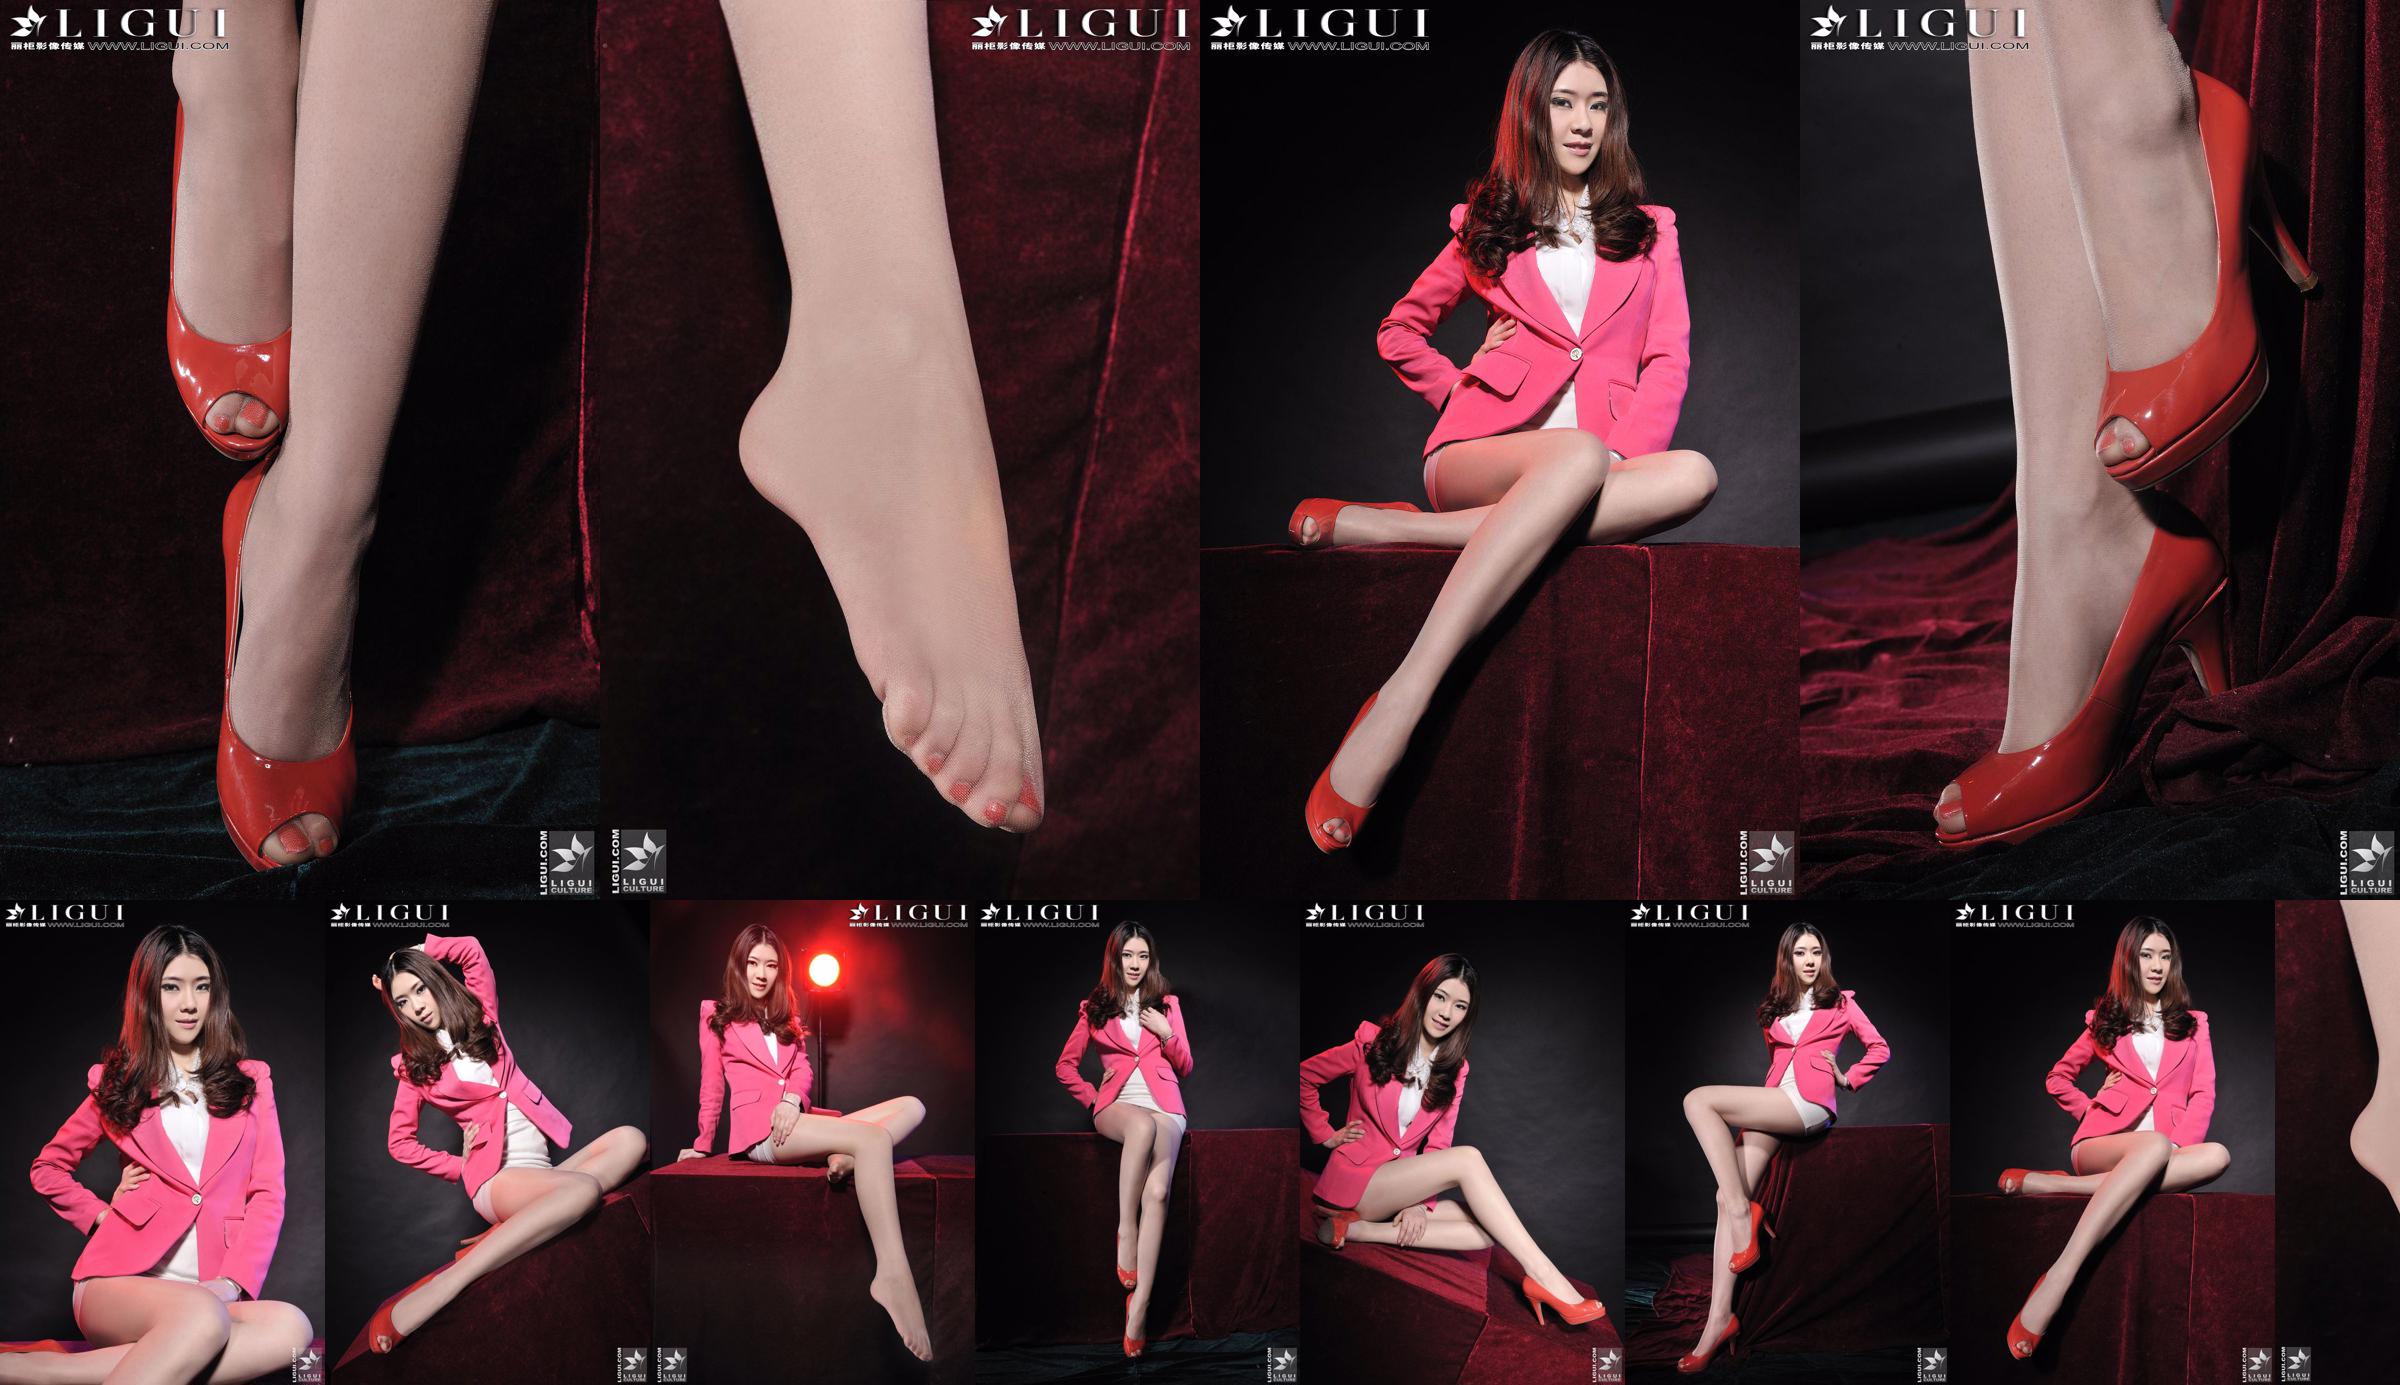 นางแบบ Chenchen "สาวส้นสูงสีแดง" [丽柜 LiGui] รูปถ่ายขาสวยและเท้าหยก No.843bba หน้า 1